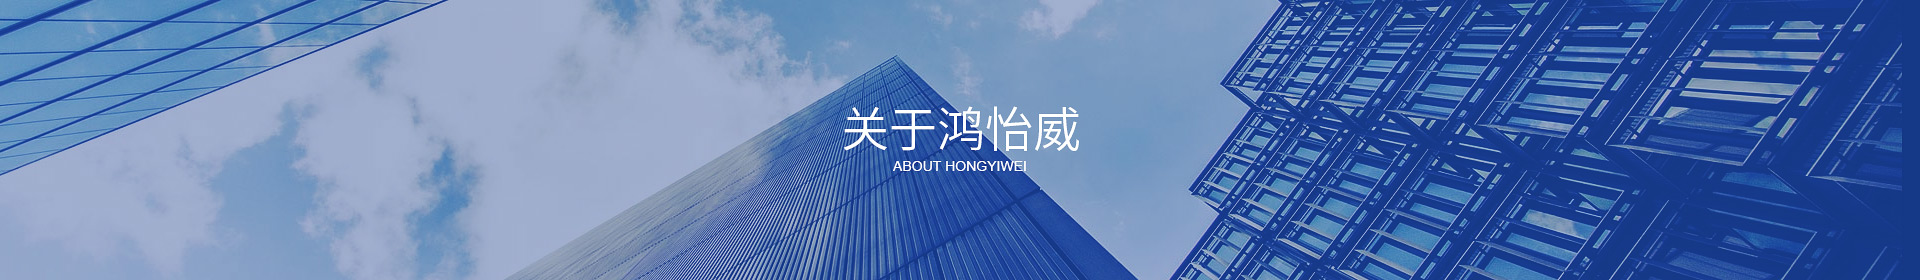 东莞市鸿怡威自动化设备有限公司